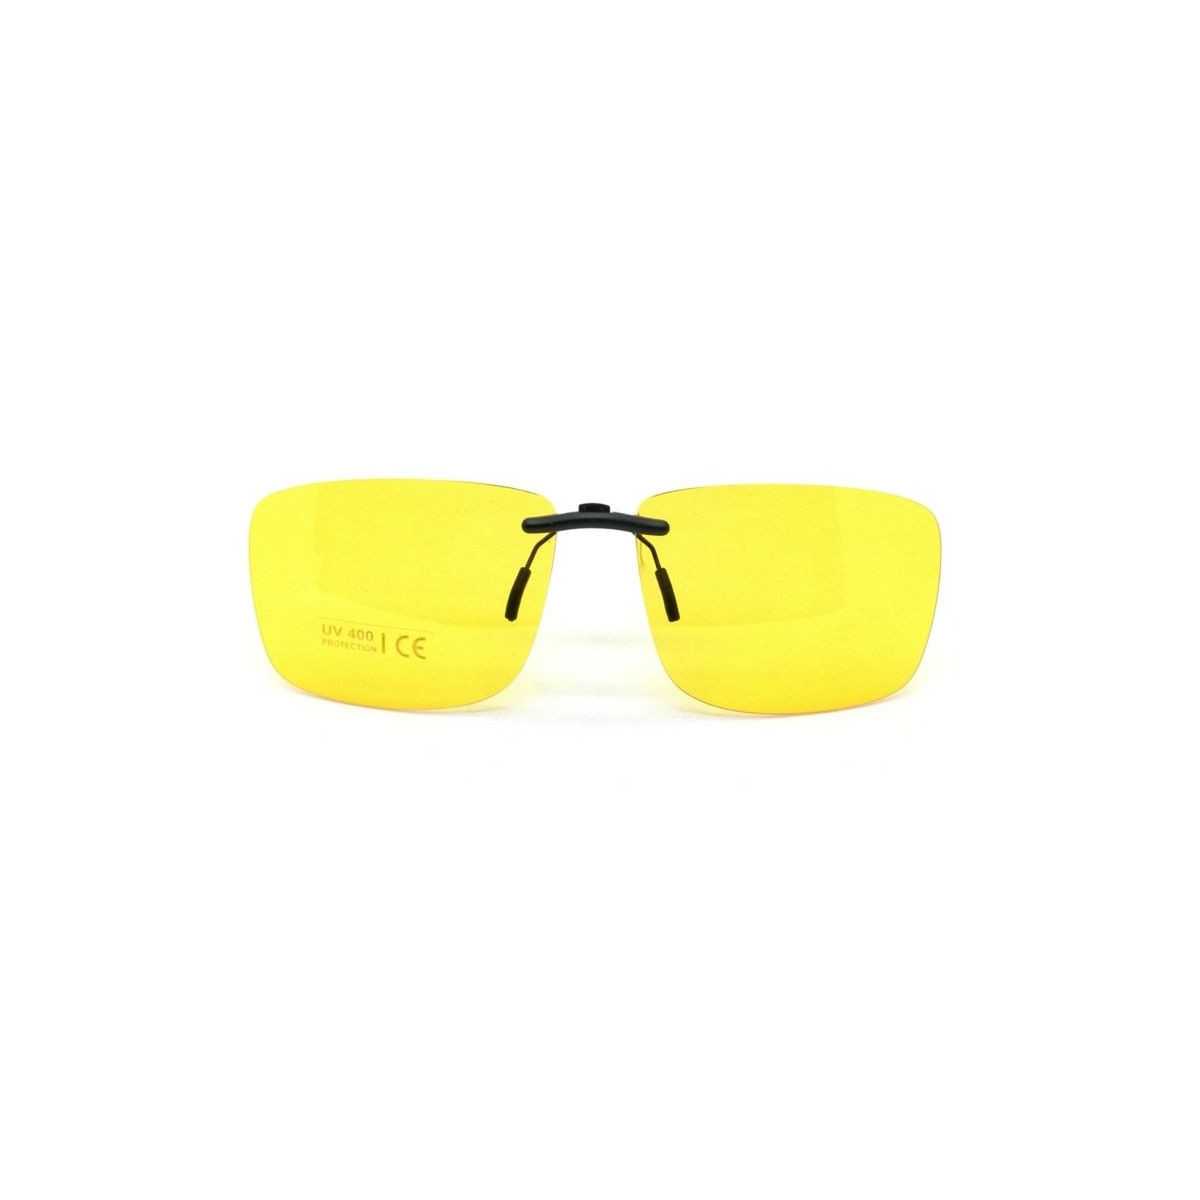 Žltý pevný šoférsky slnečný klip na dioptrické okuliare CL10Y Univo - 1